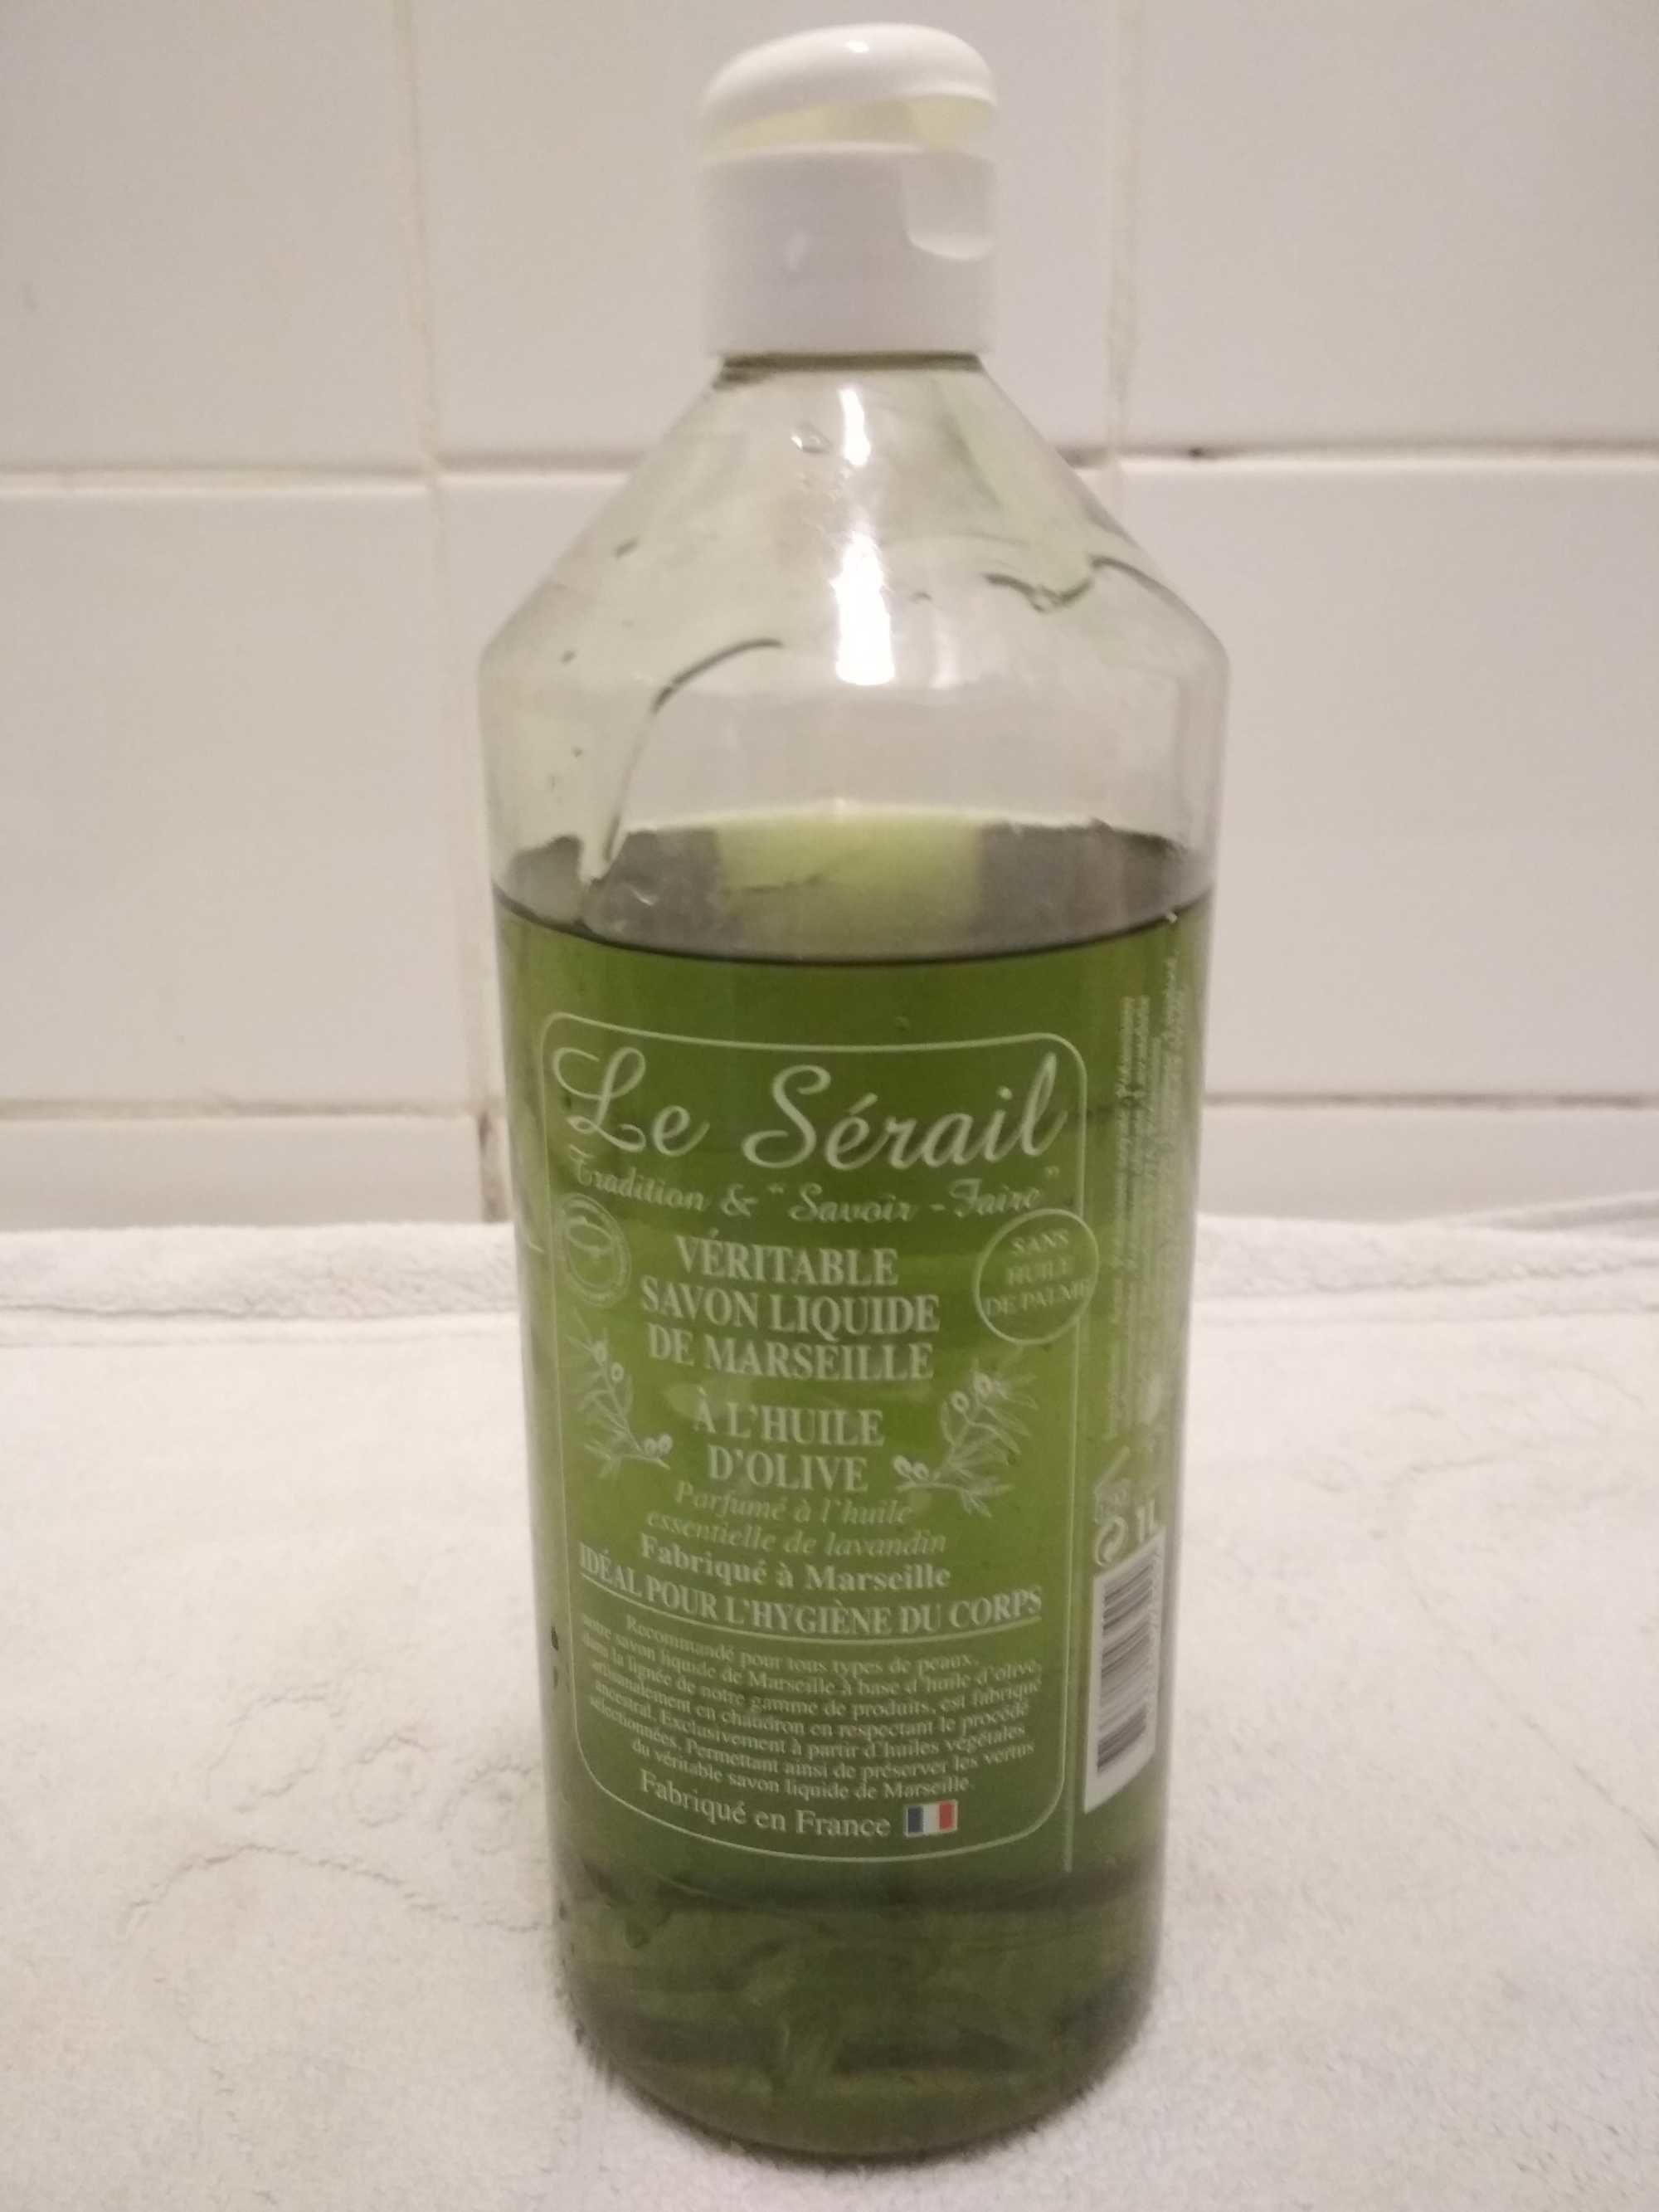 Véritable savon liquide de Marseille a l'huile d'olive Le Sérail - Продукт - fr